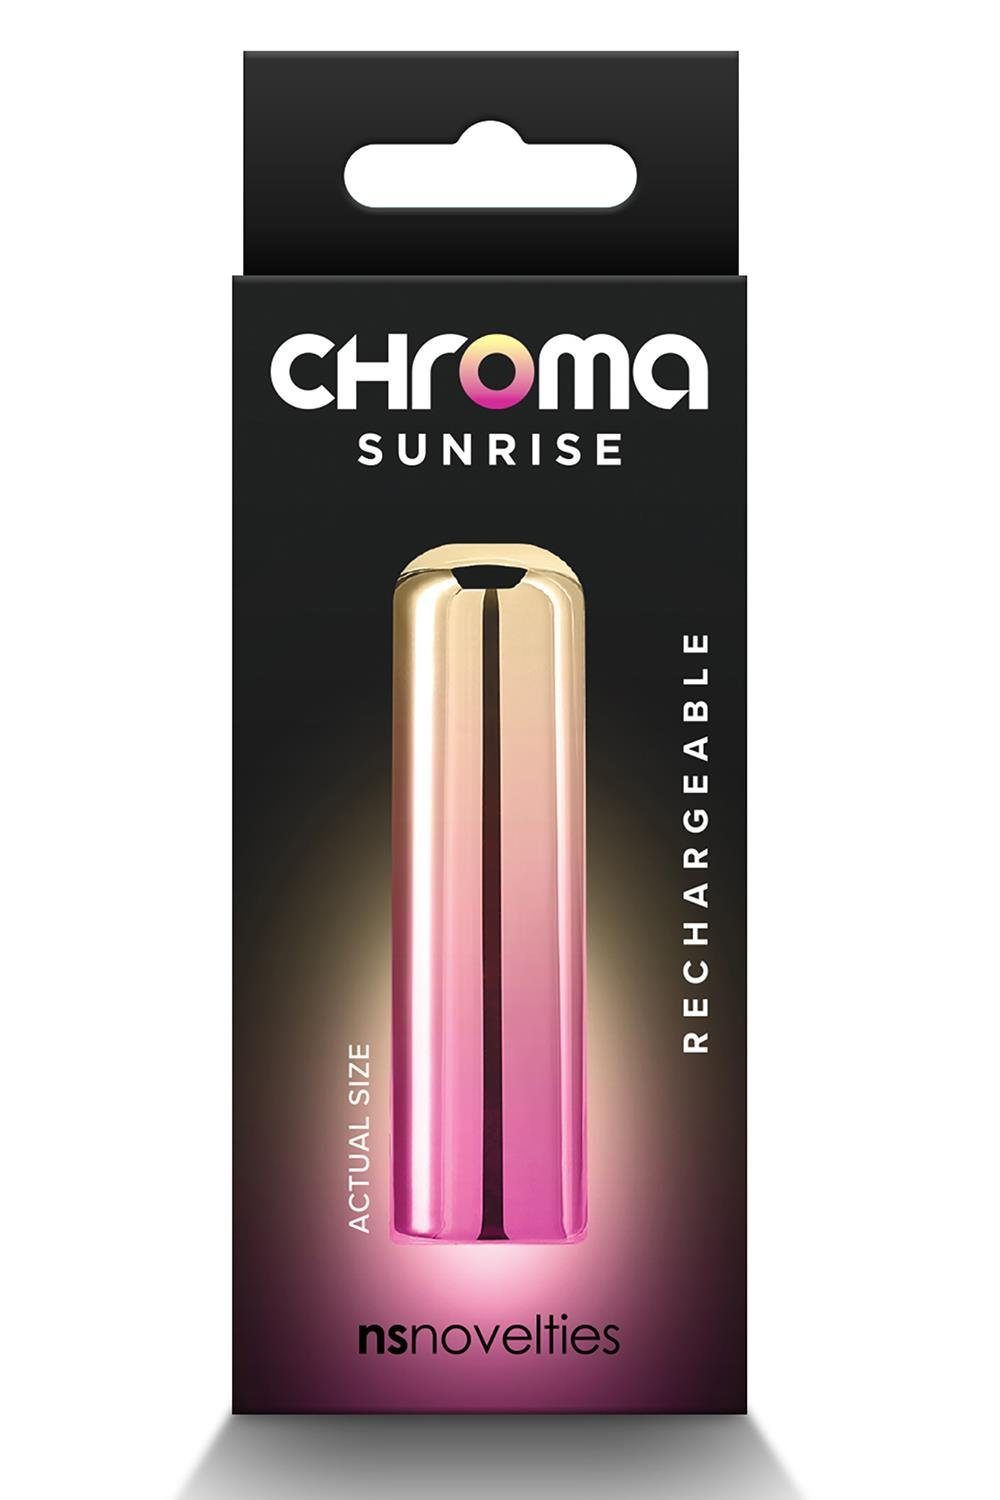 Sunrise NS Novelties Chroma Mini-Vibrator Small